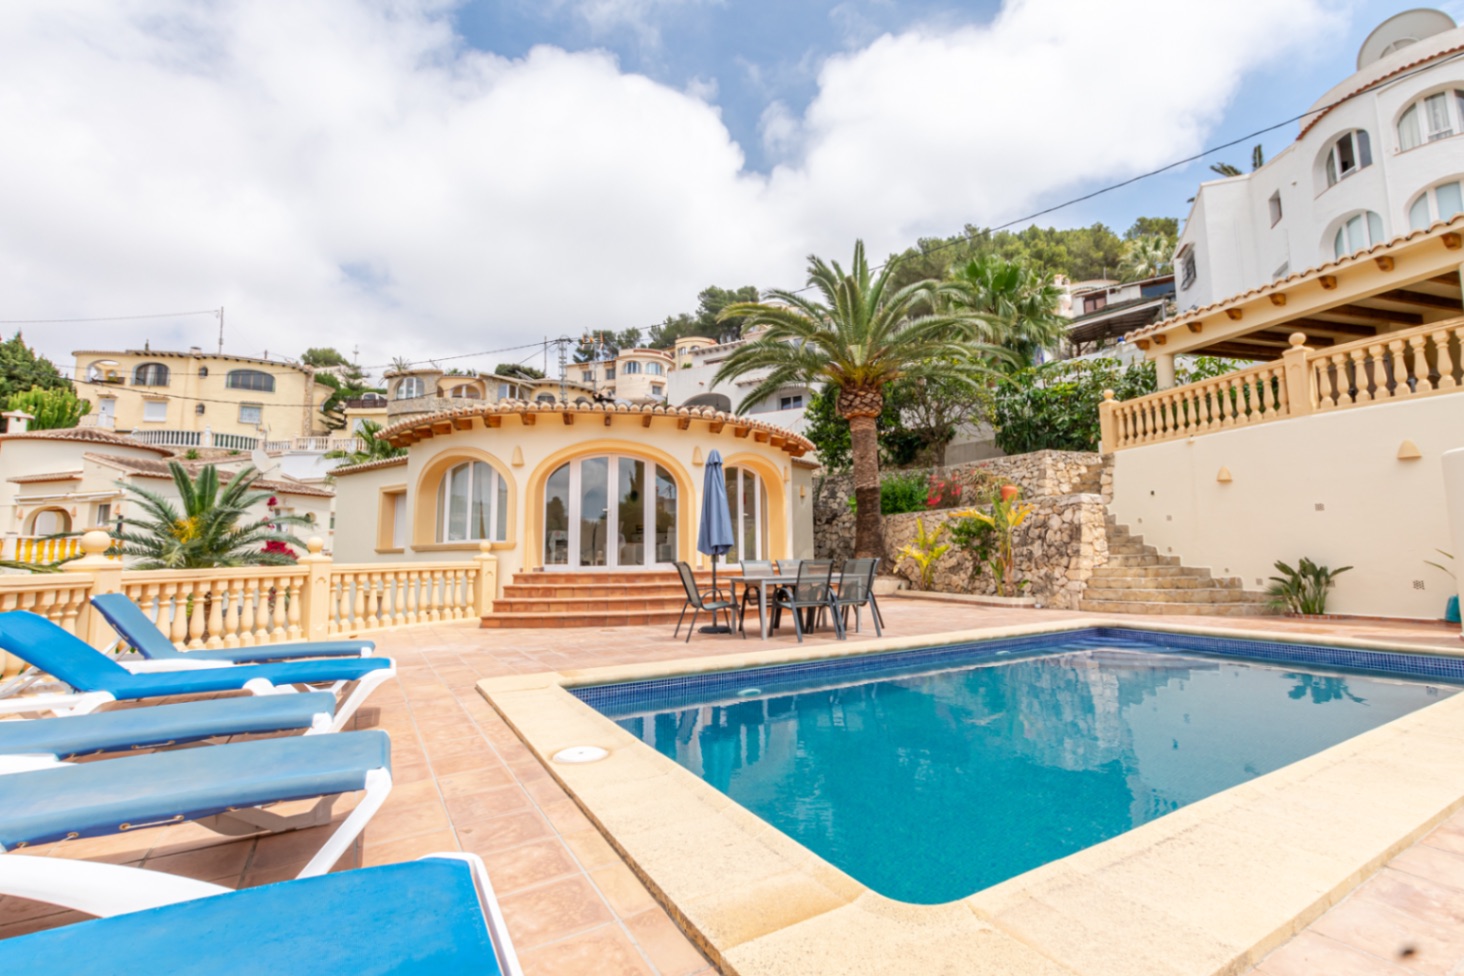 Maison avec piscine, terrasses et appartement indépendant à Benissa